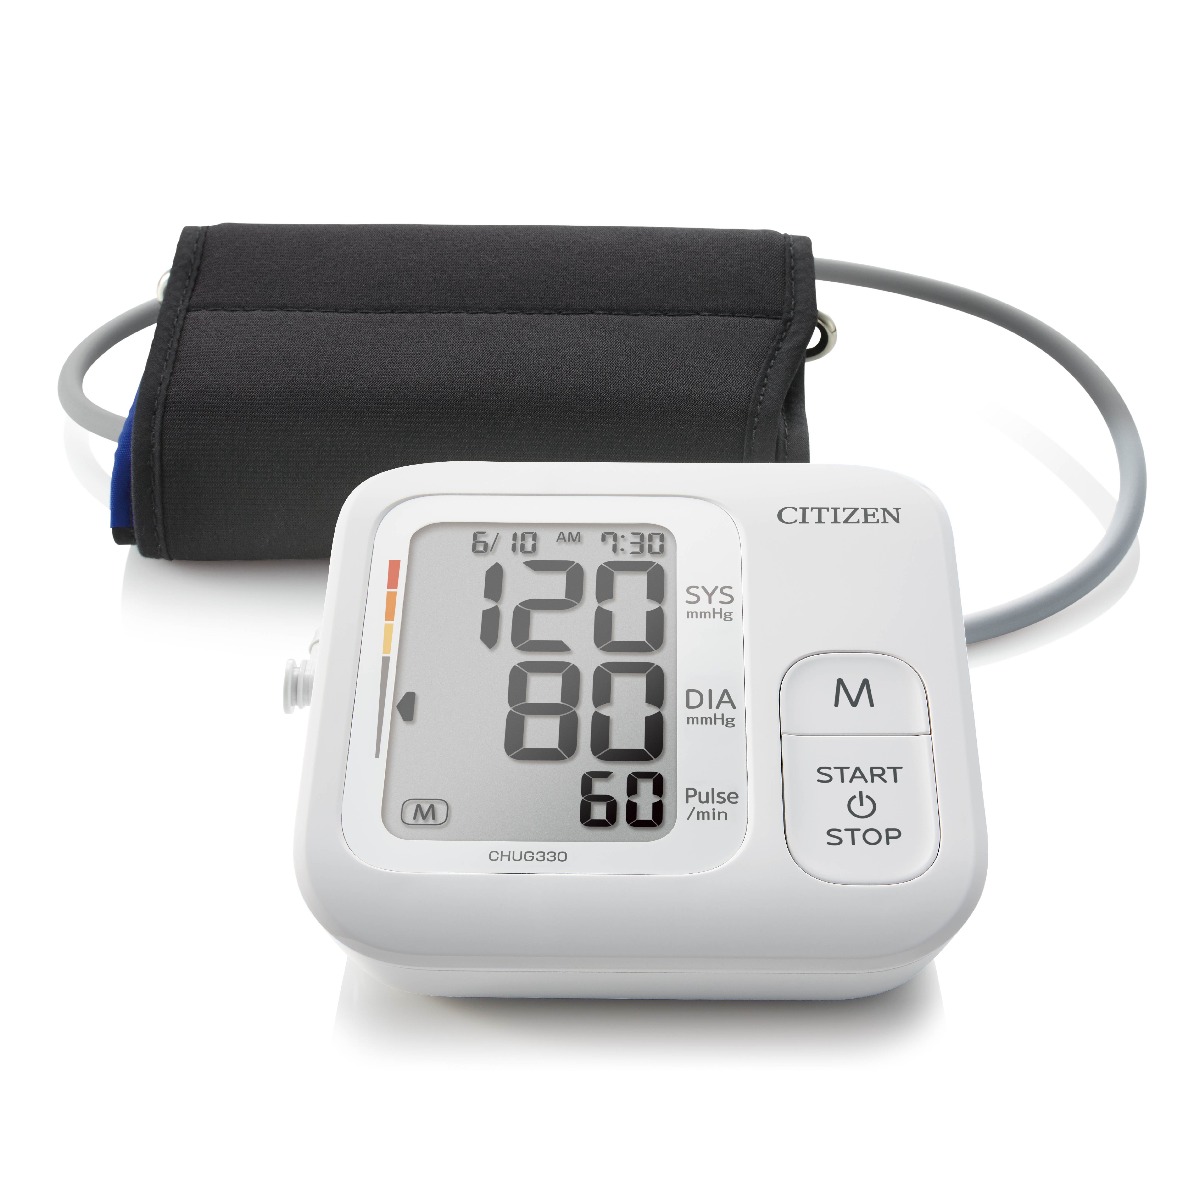 Tuyệt đối không nên dùng nếu bạn chưa biết: Máy đo huyết áp là gì?